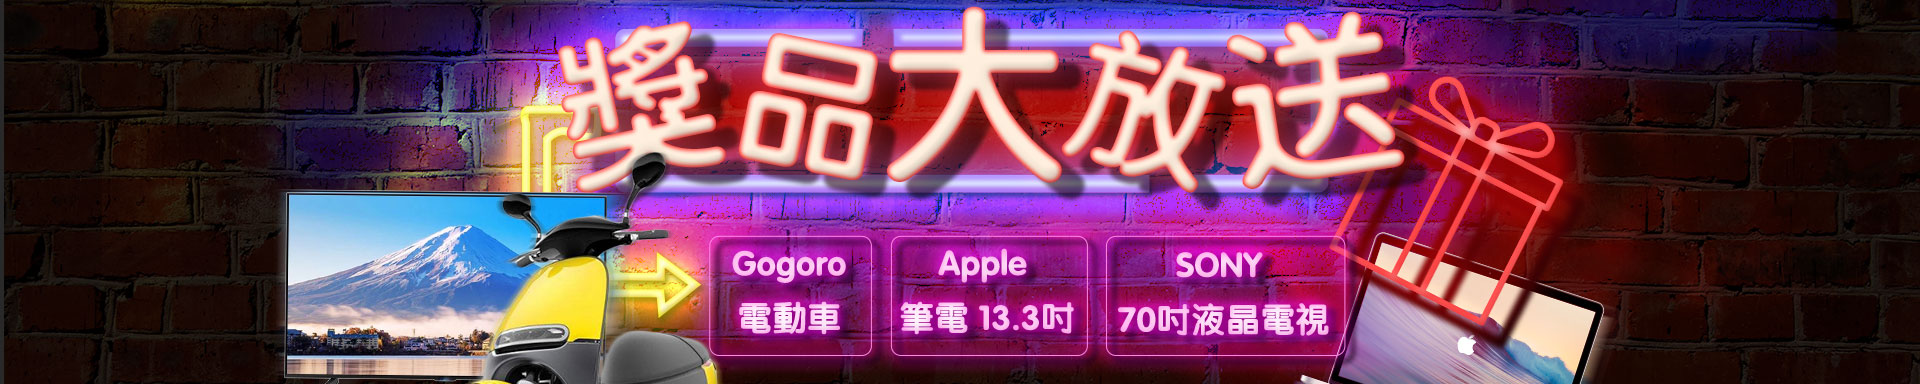 【快樂發】Gogoro、Apple筆電、SONY液晶電視等獎品大放送